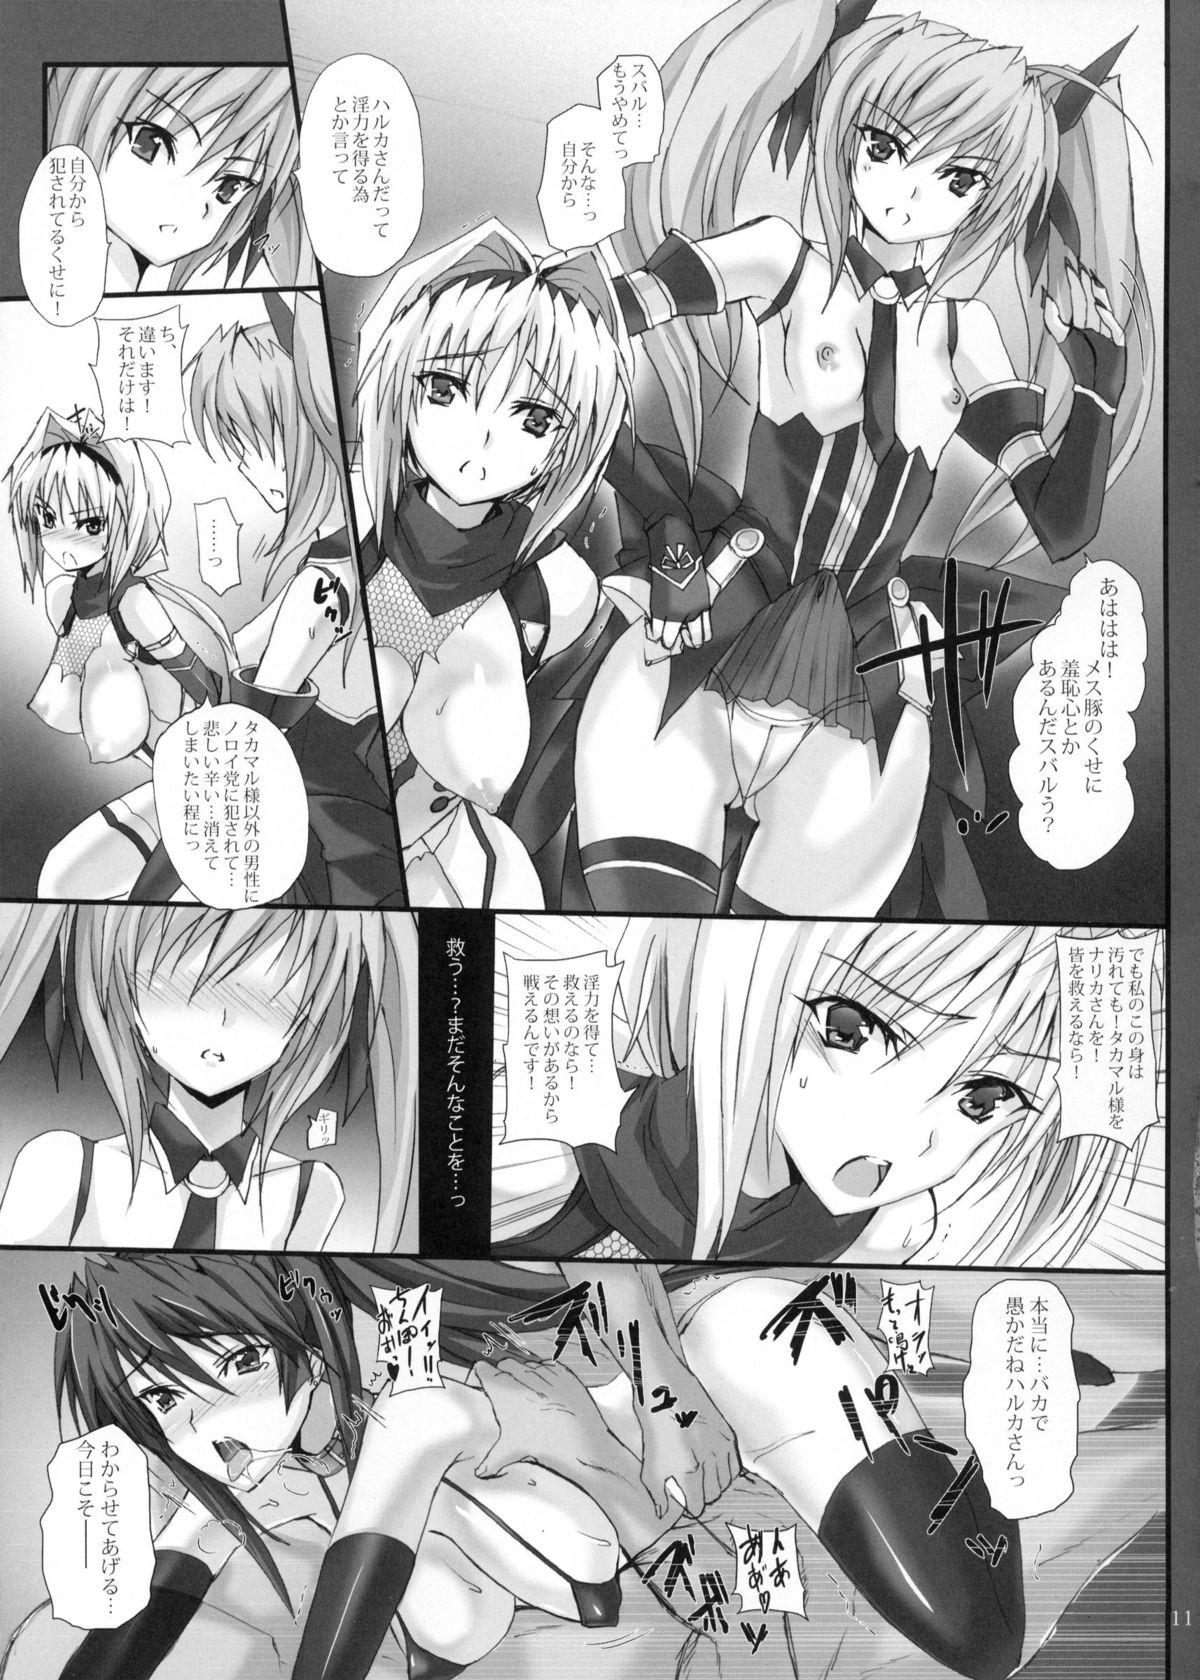 Climax Yami wo Matoishi Homura wa Ono ga Mi wo Boukyaku no Gokuen e - Beat blades haruka Women Fucking - Page 10